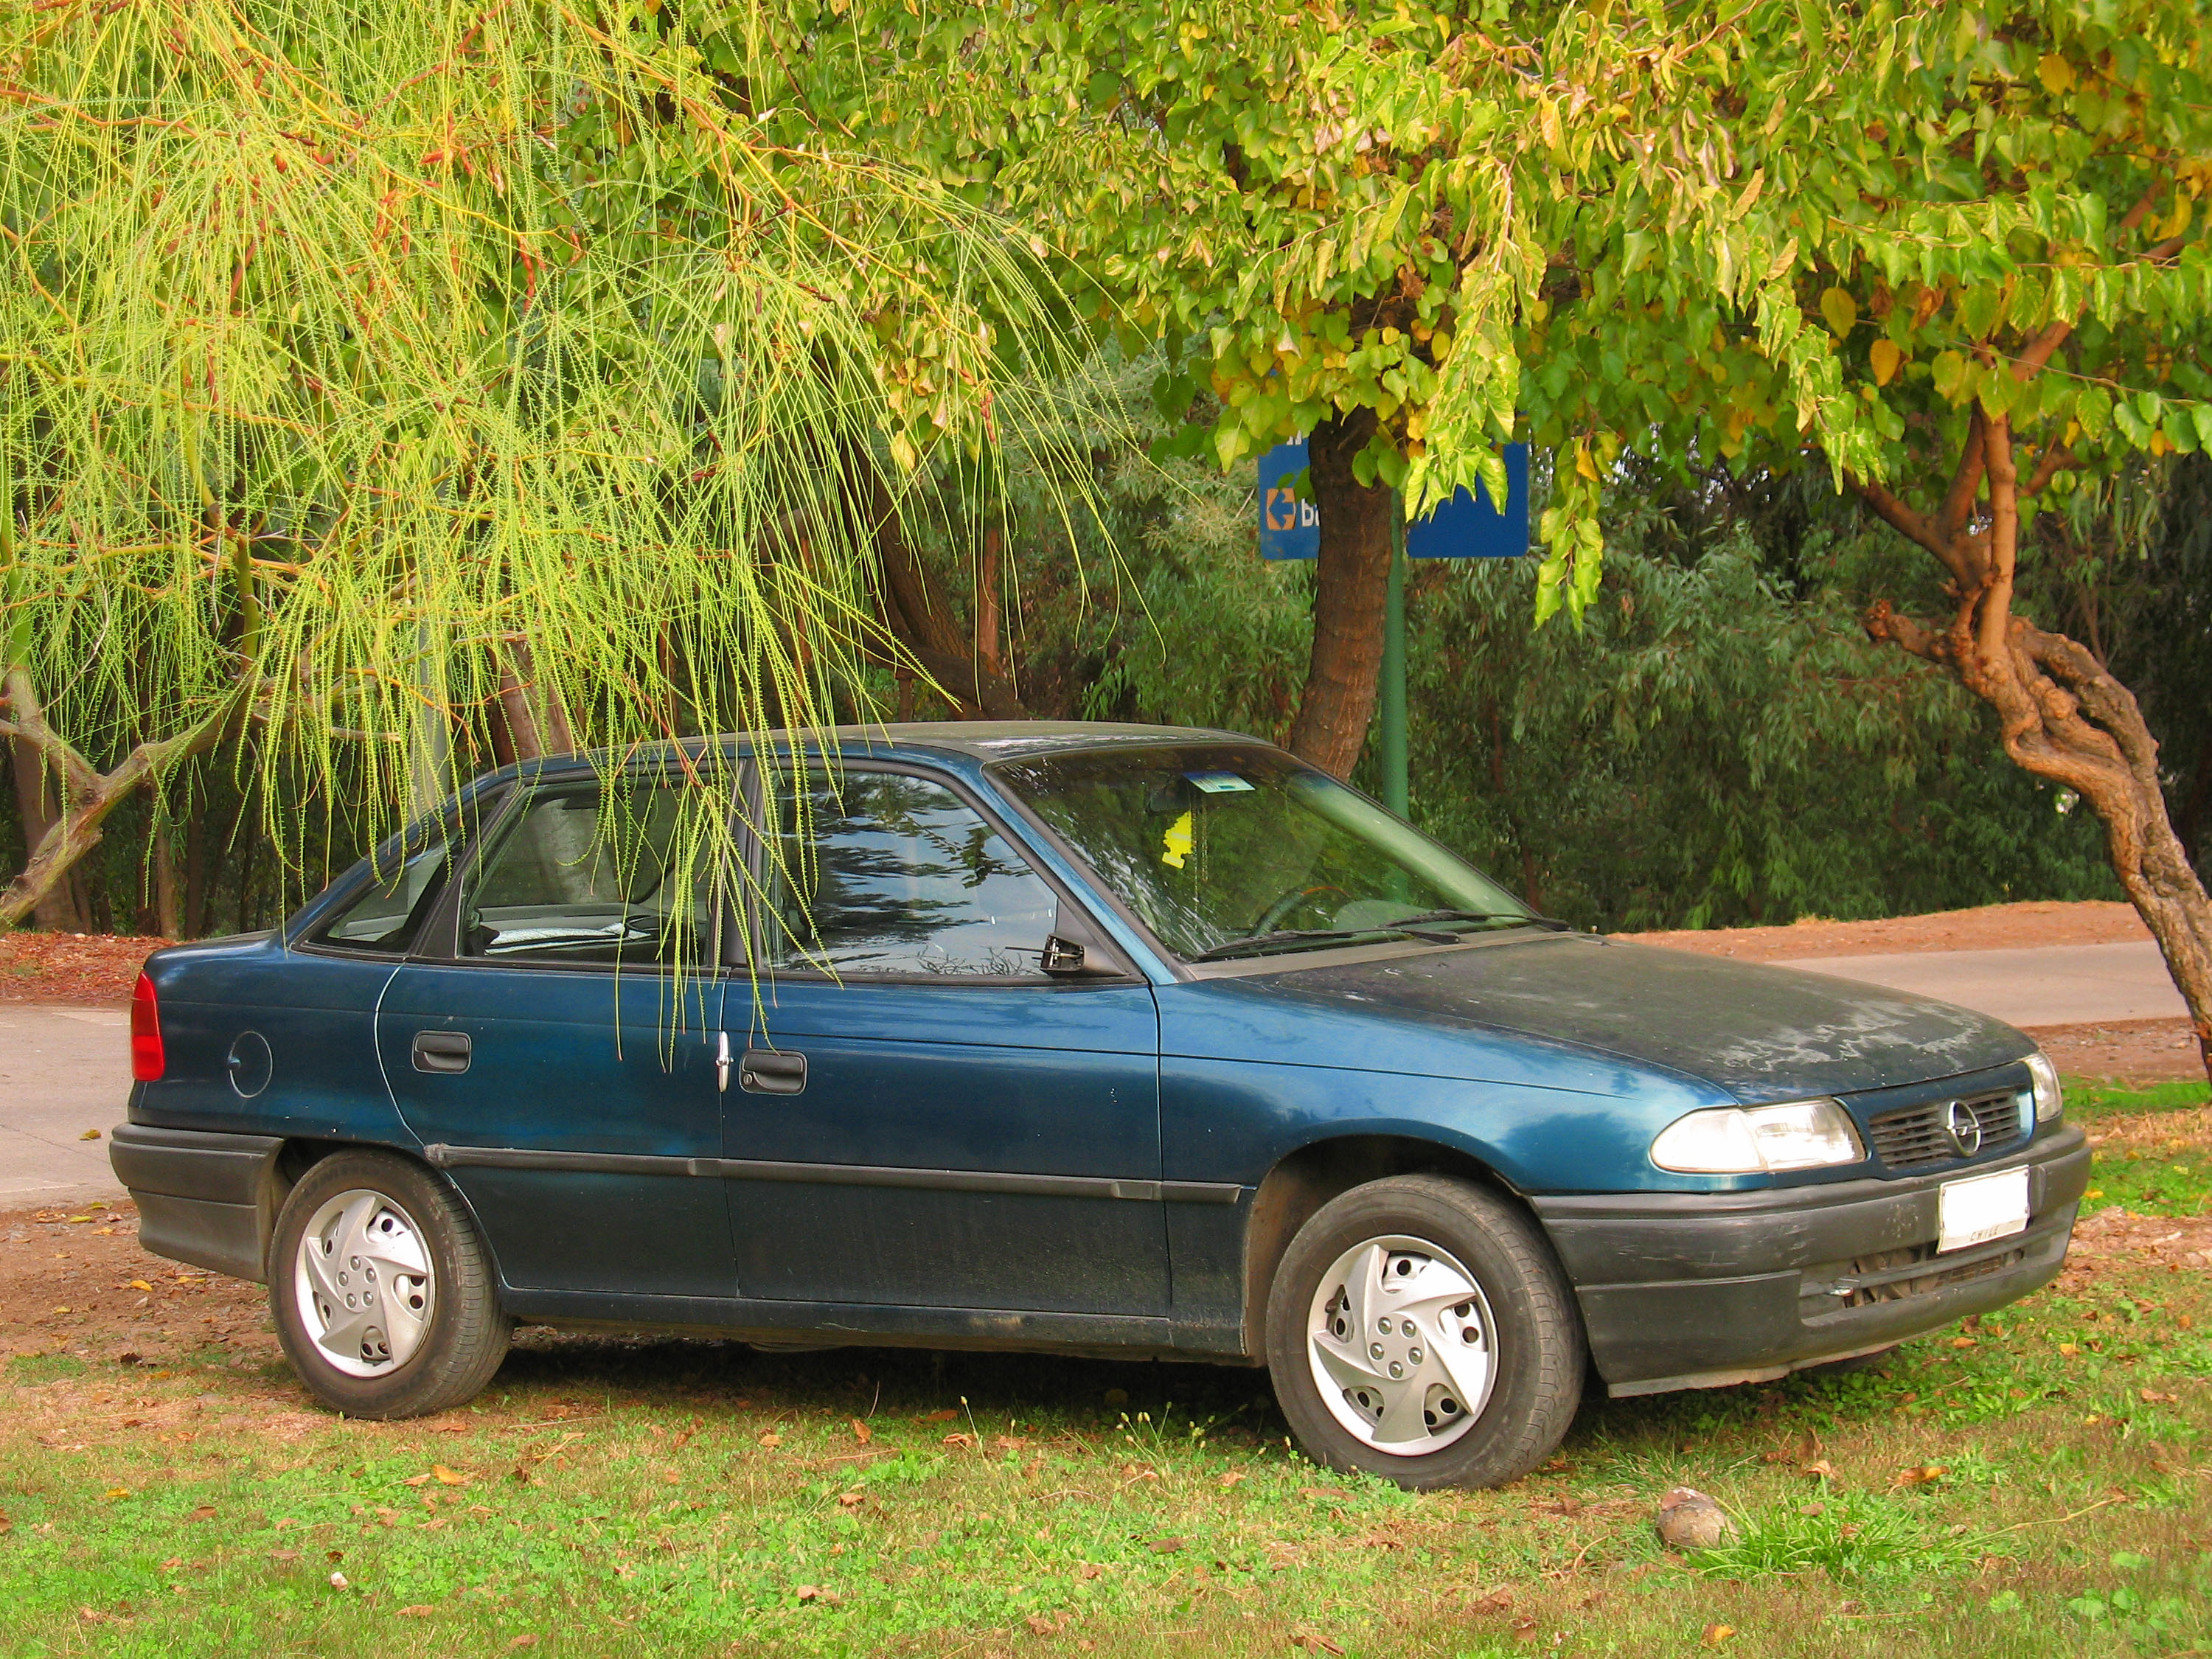 Pellen Gemiddeld Uitschakelen File:Opel Astra 1.6 1998 (15520861842).jpg - Wikimedia Commons